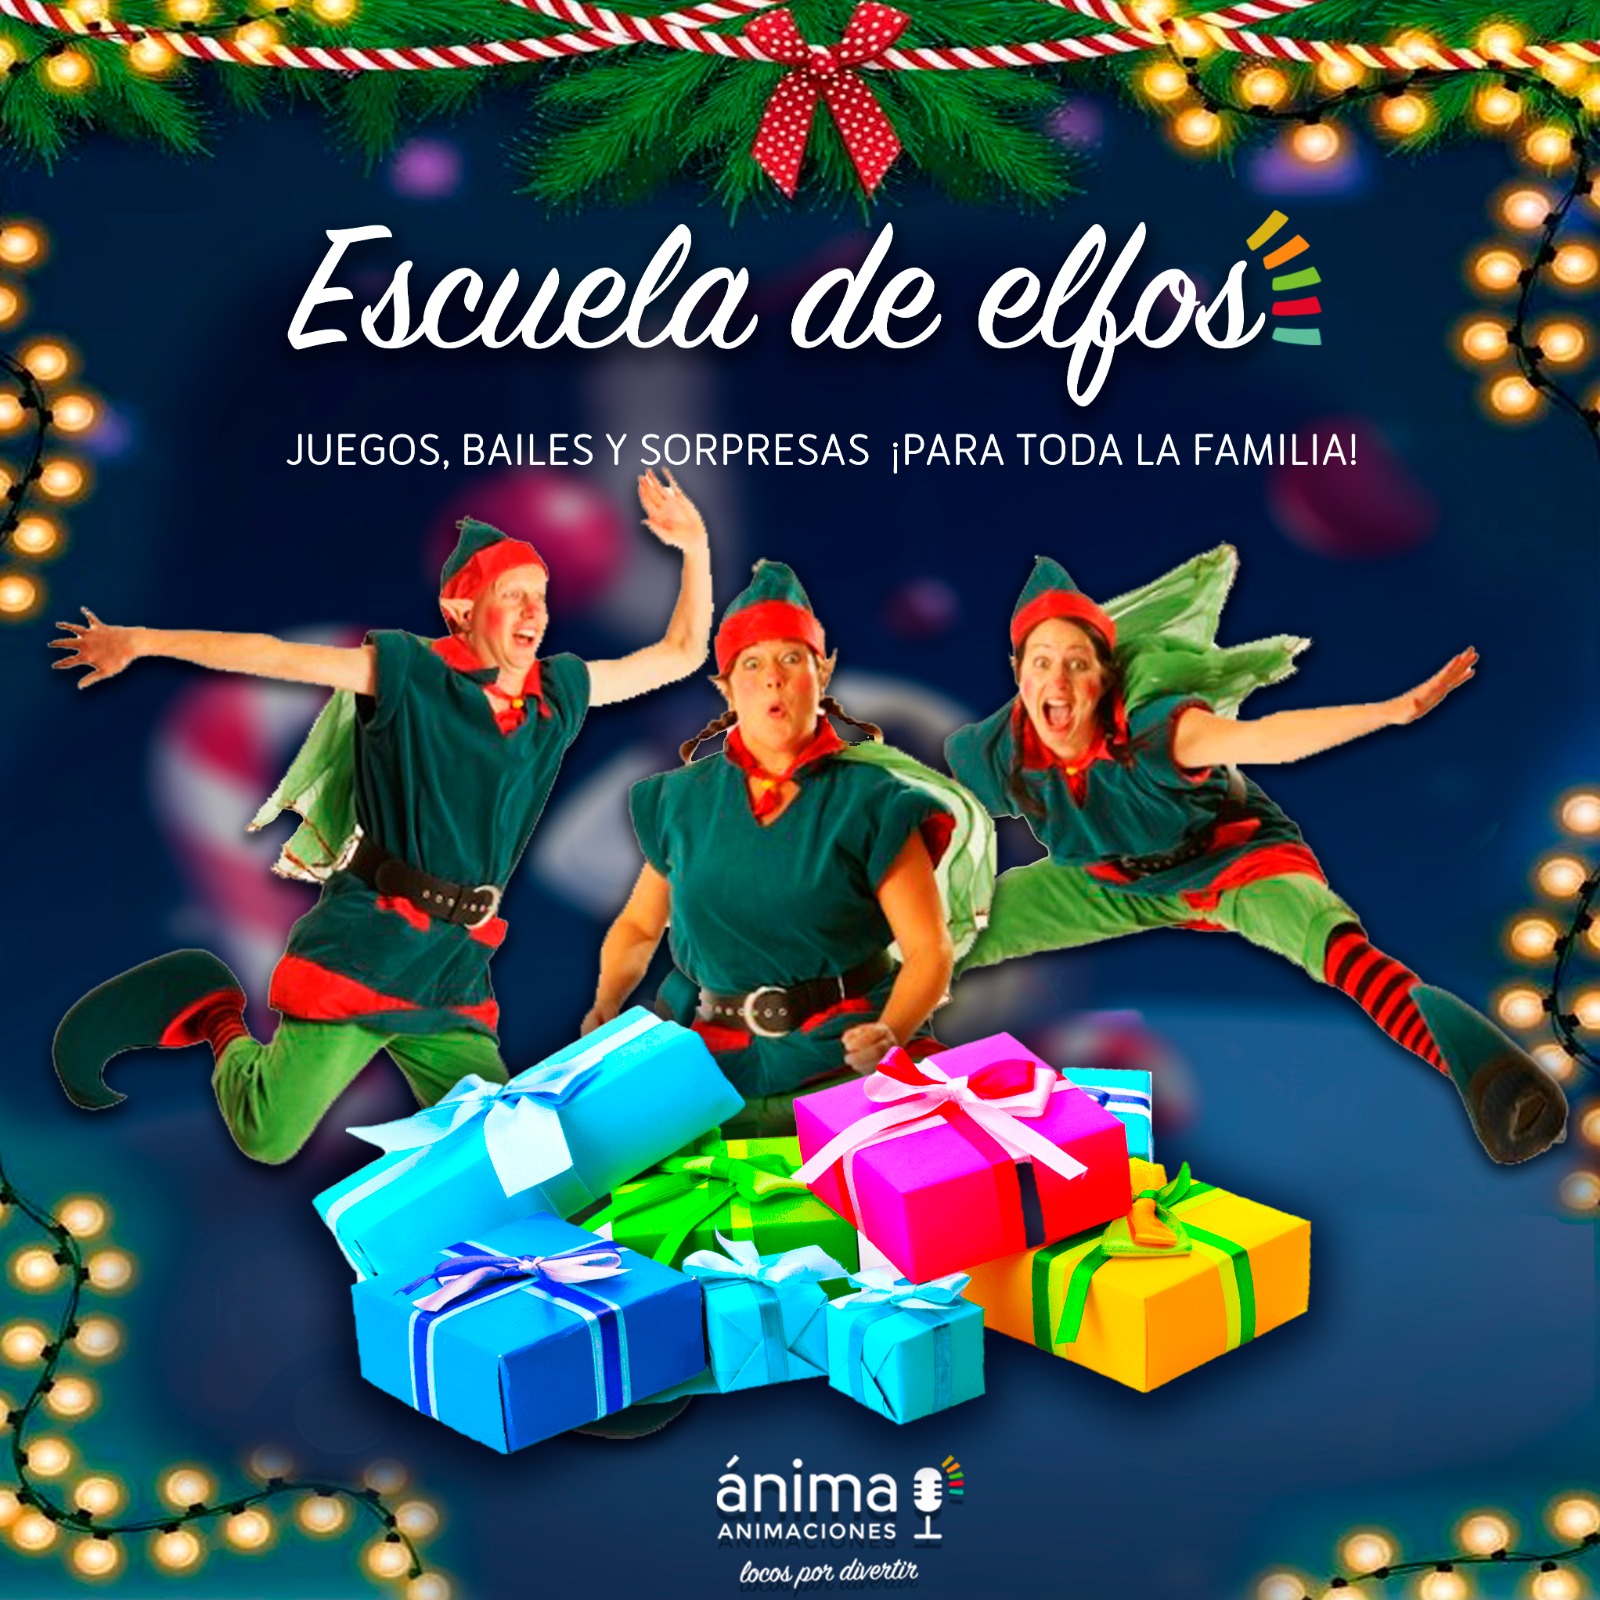 Escuela de elfos - animadores navidad infantil niños zaragoza